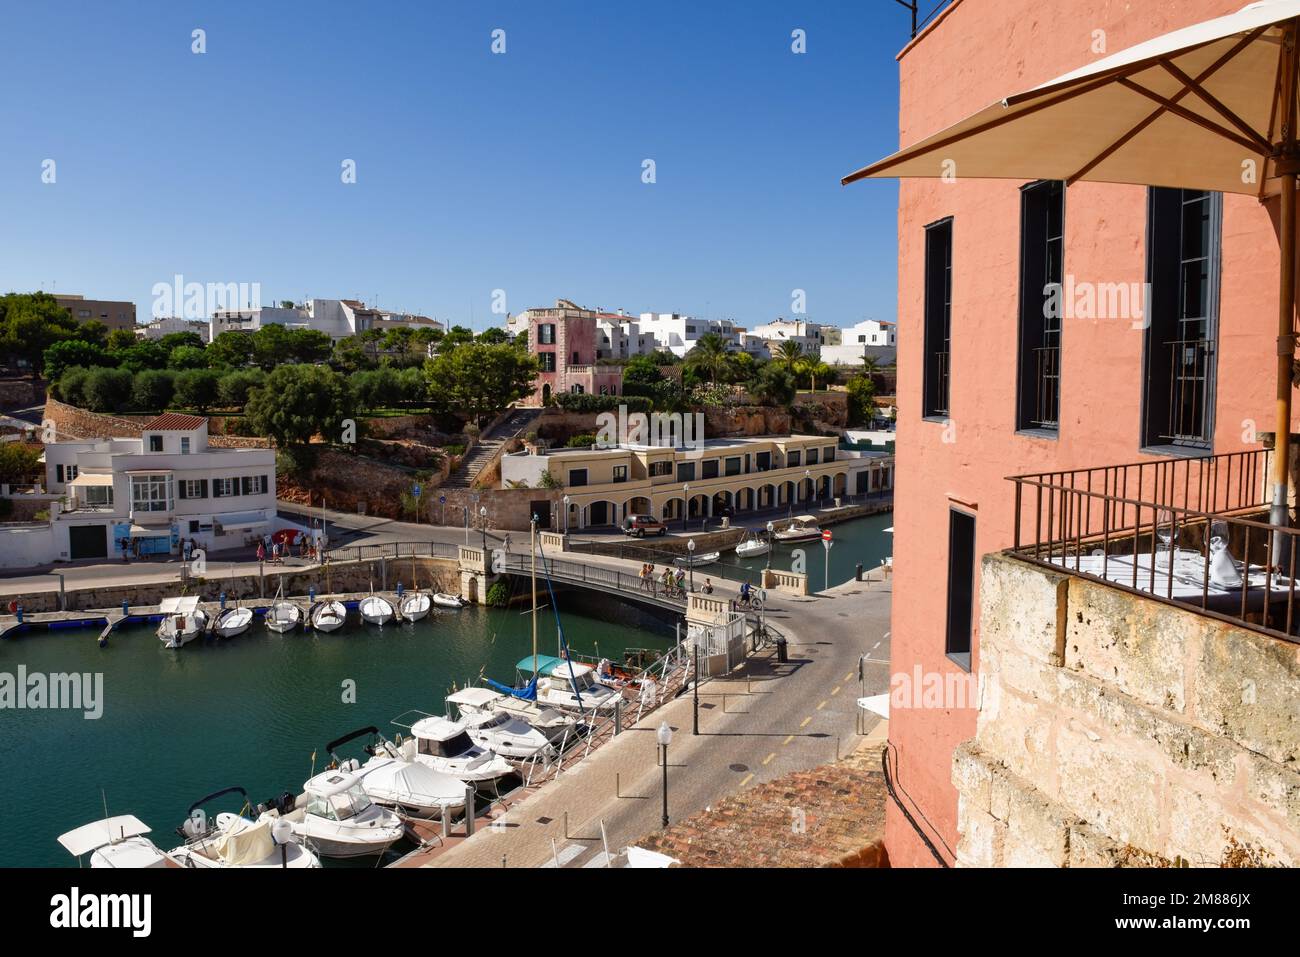 Vue panoramique sur la marina historique dans une ville portuaire connue pour les voyages et le tourisme Banque D'Images